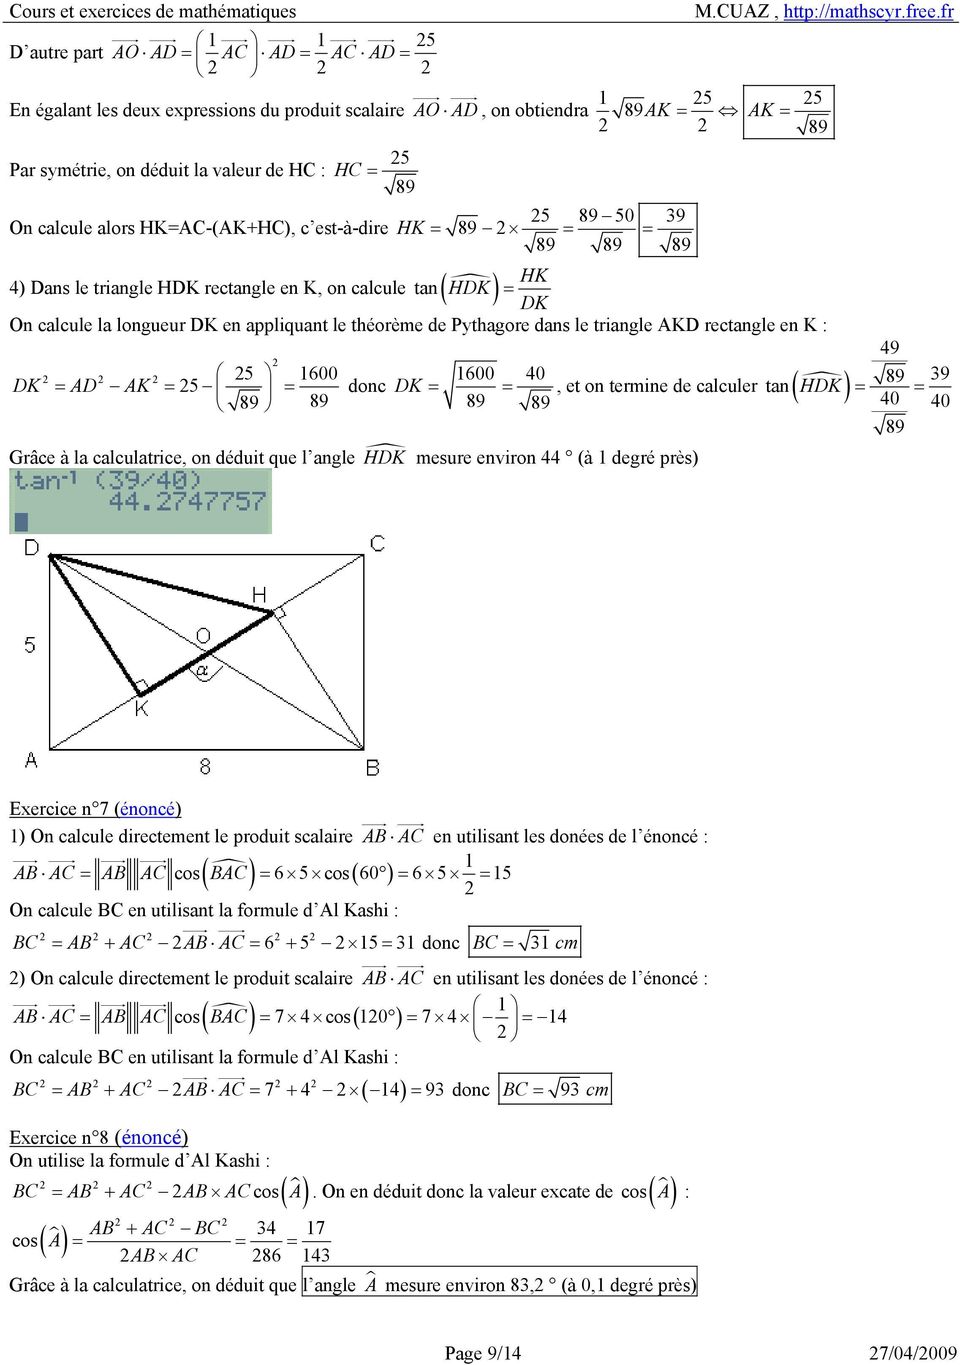 dans le triangle AKD rectangle en K : 9 5 6 6 DK = AD AK = 5 = donc DK = =, et on termine de calculer 9 tan ( HDK ) = 89 = 89 89 89 89 89 Grâce à la calculatrice, on déduit que l angle HDK mesure